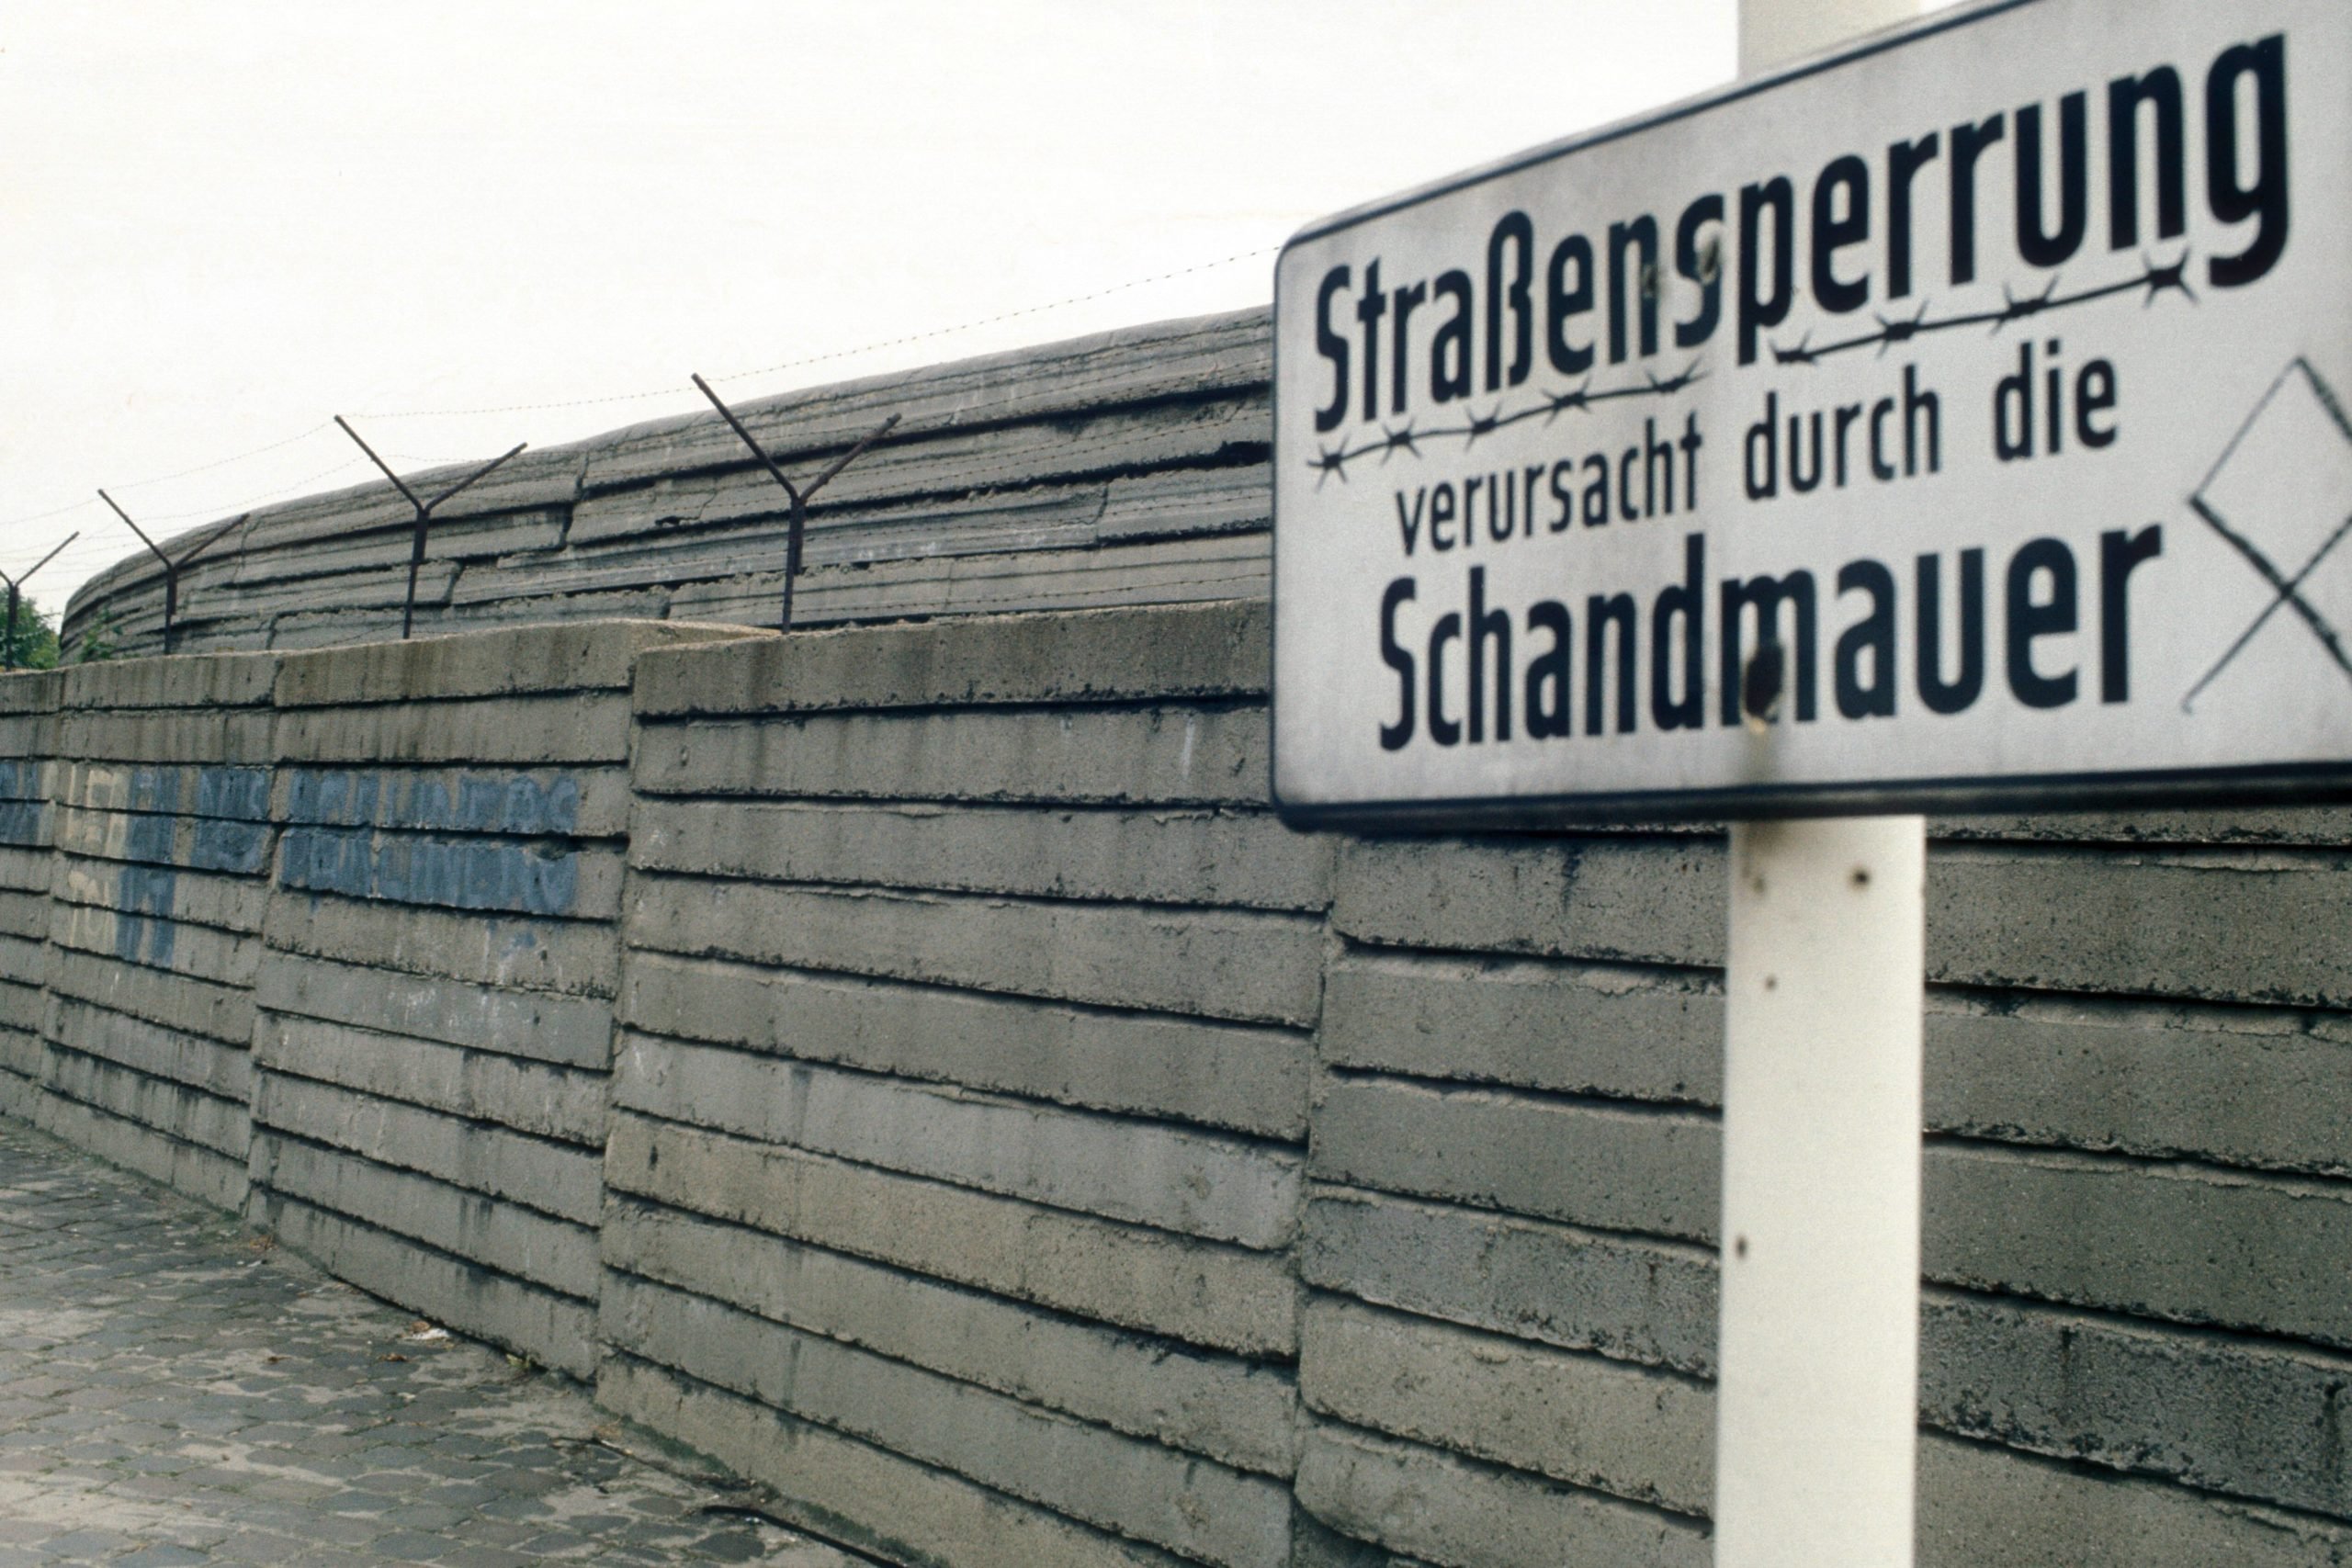 "Straßensperrung verursacht durch die Schandmauer", wer das Schild wohl aufgestellt hat? Foto: Imago/Sven Simon